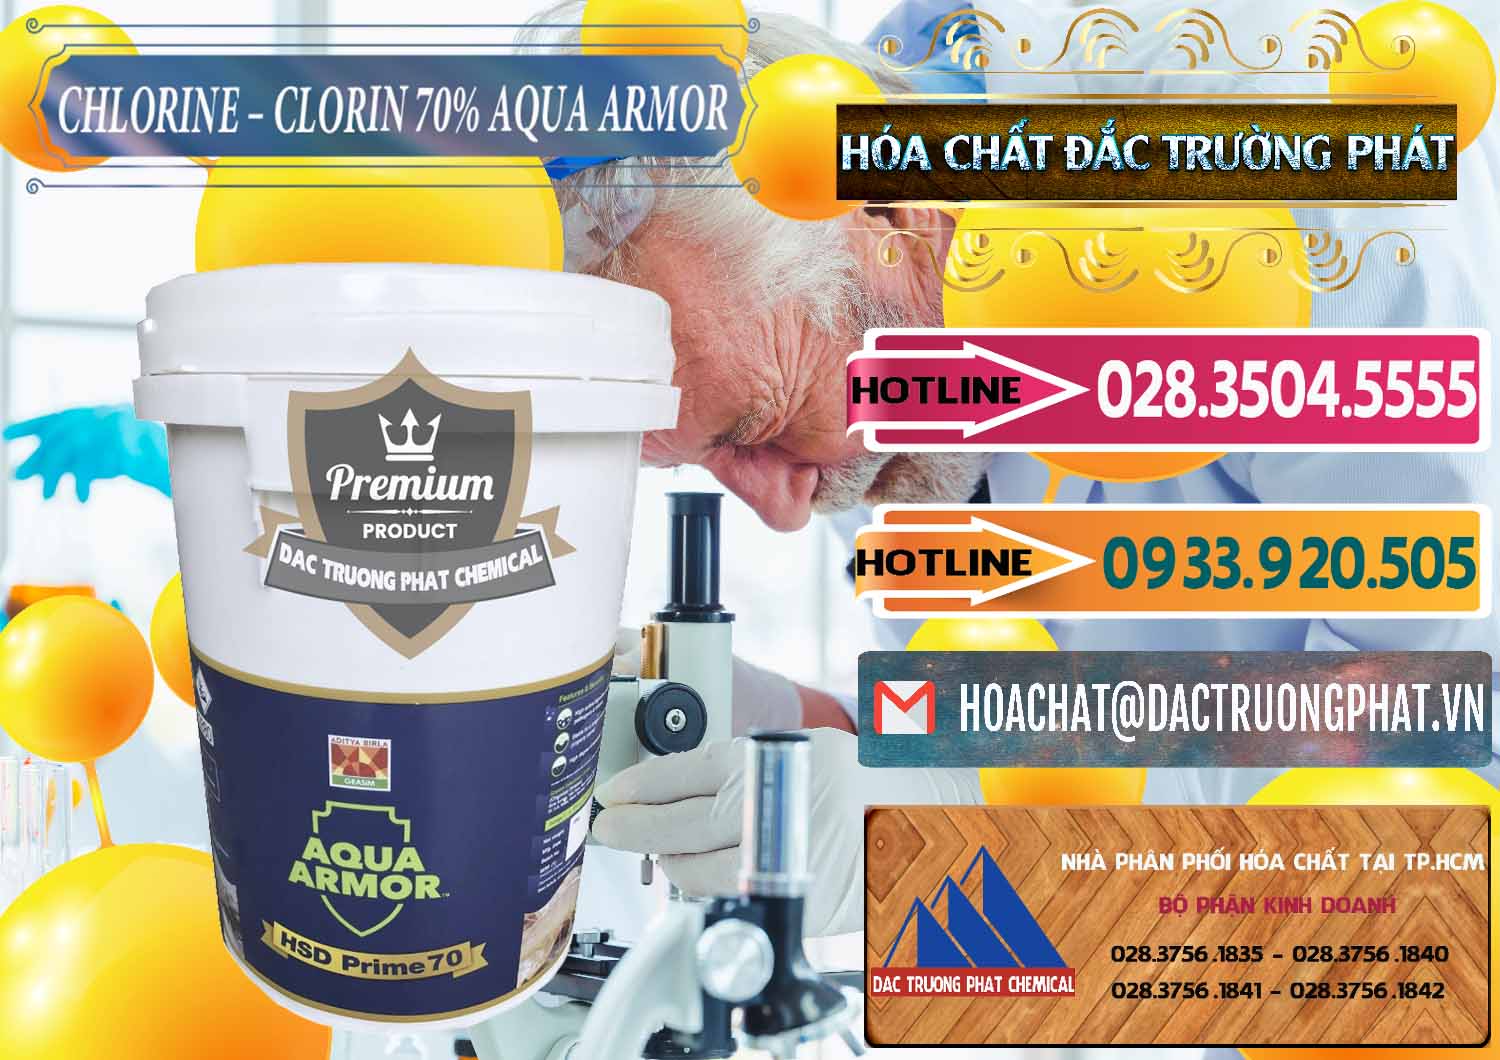 Đơn vị bán & cung cấp Chlorine – Clorin 70% Aqua Armor Aditya Birla Grasim Ấn Độ India - 0241 - Cty chuyên bán - phân phối hóa chất tại TP.HCM - dactruongphat.vn